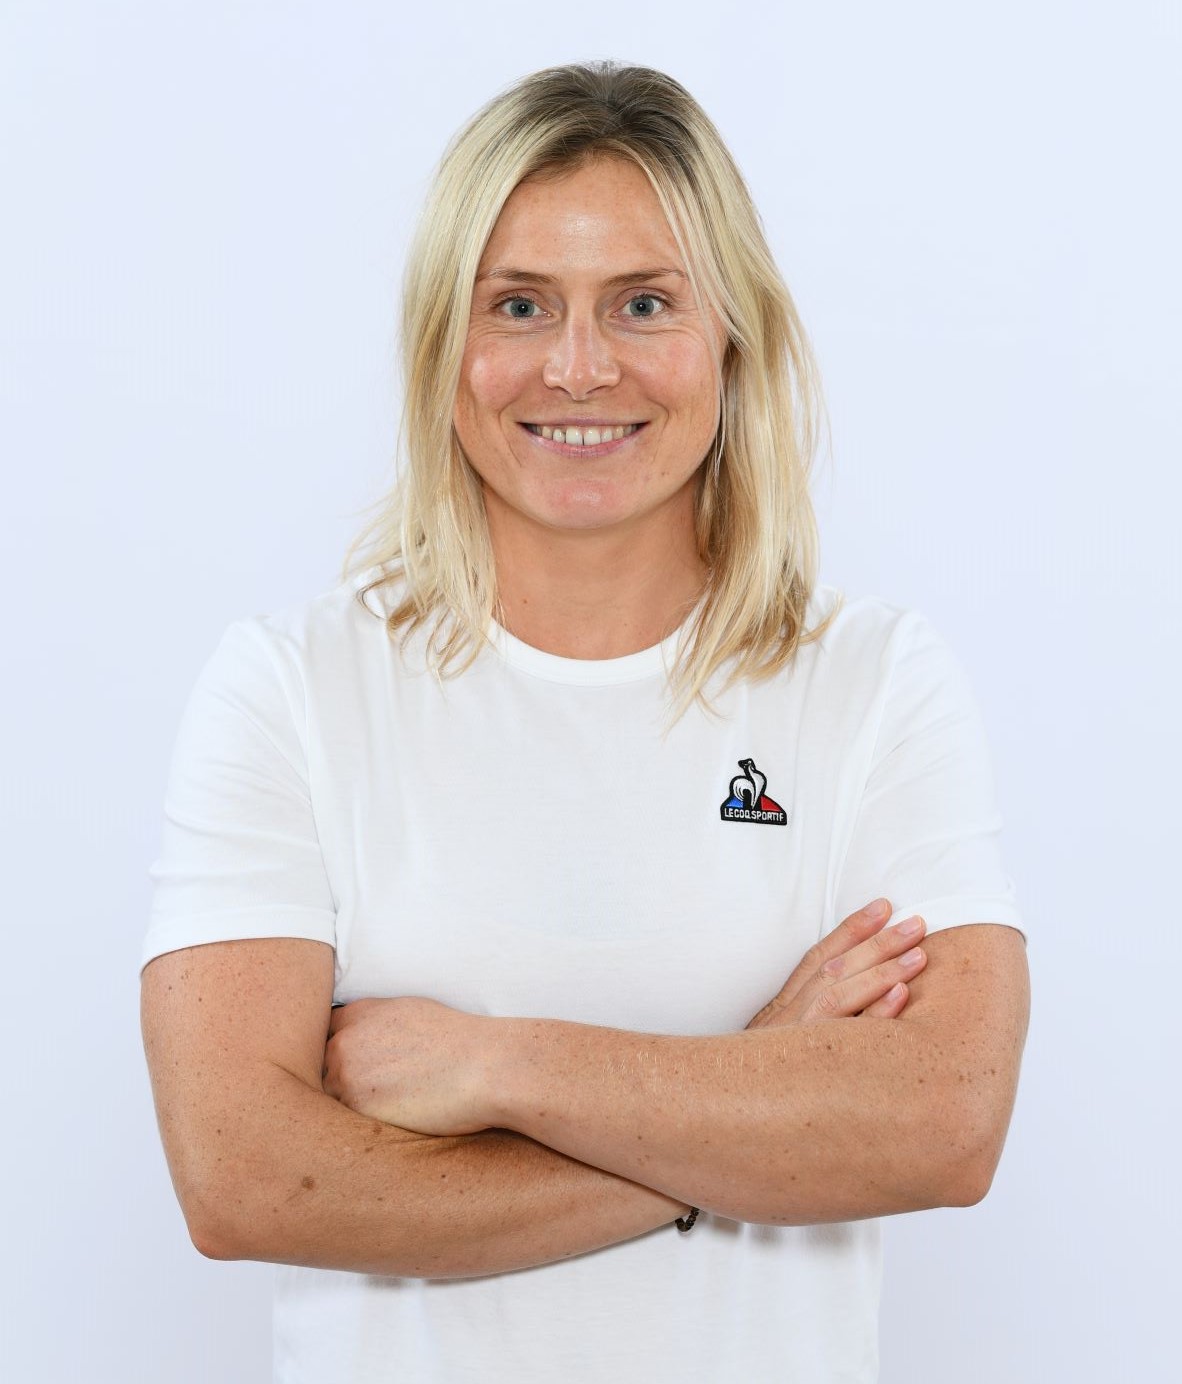 Tessa Worley, ski alpin, portrait